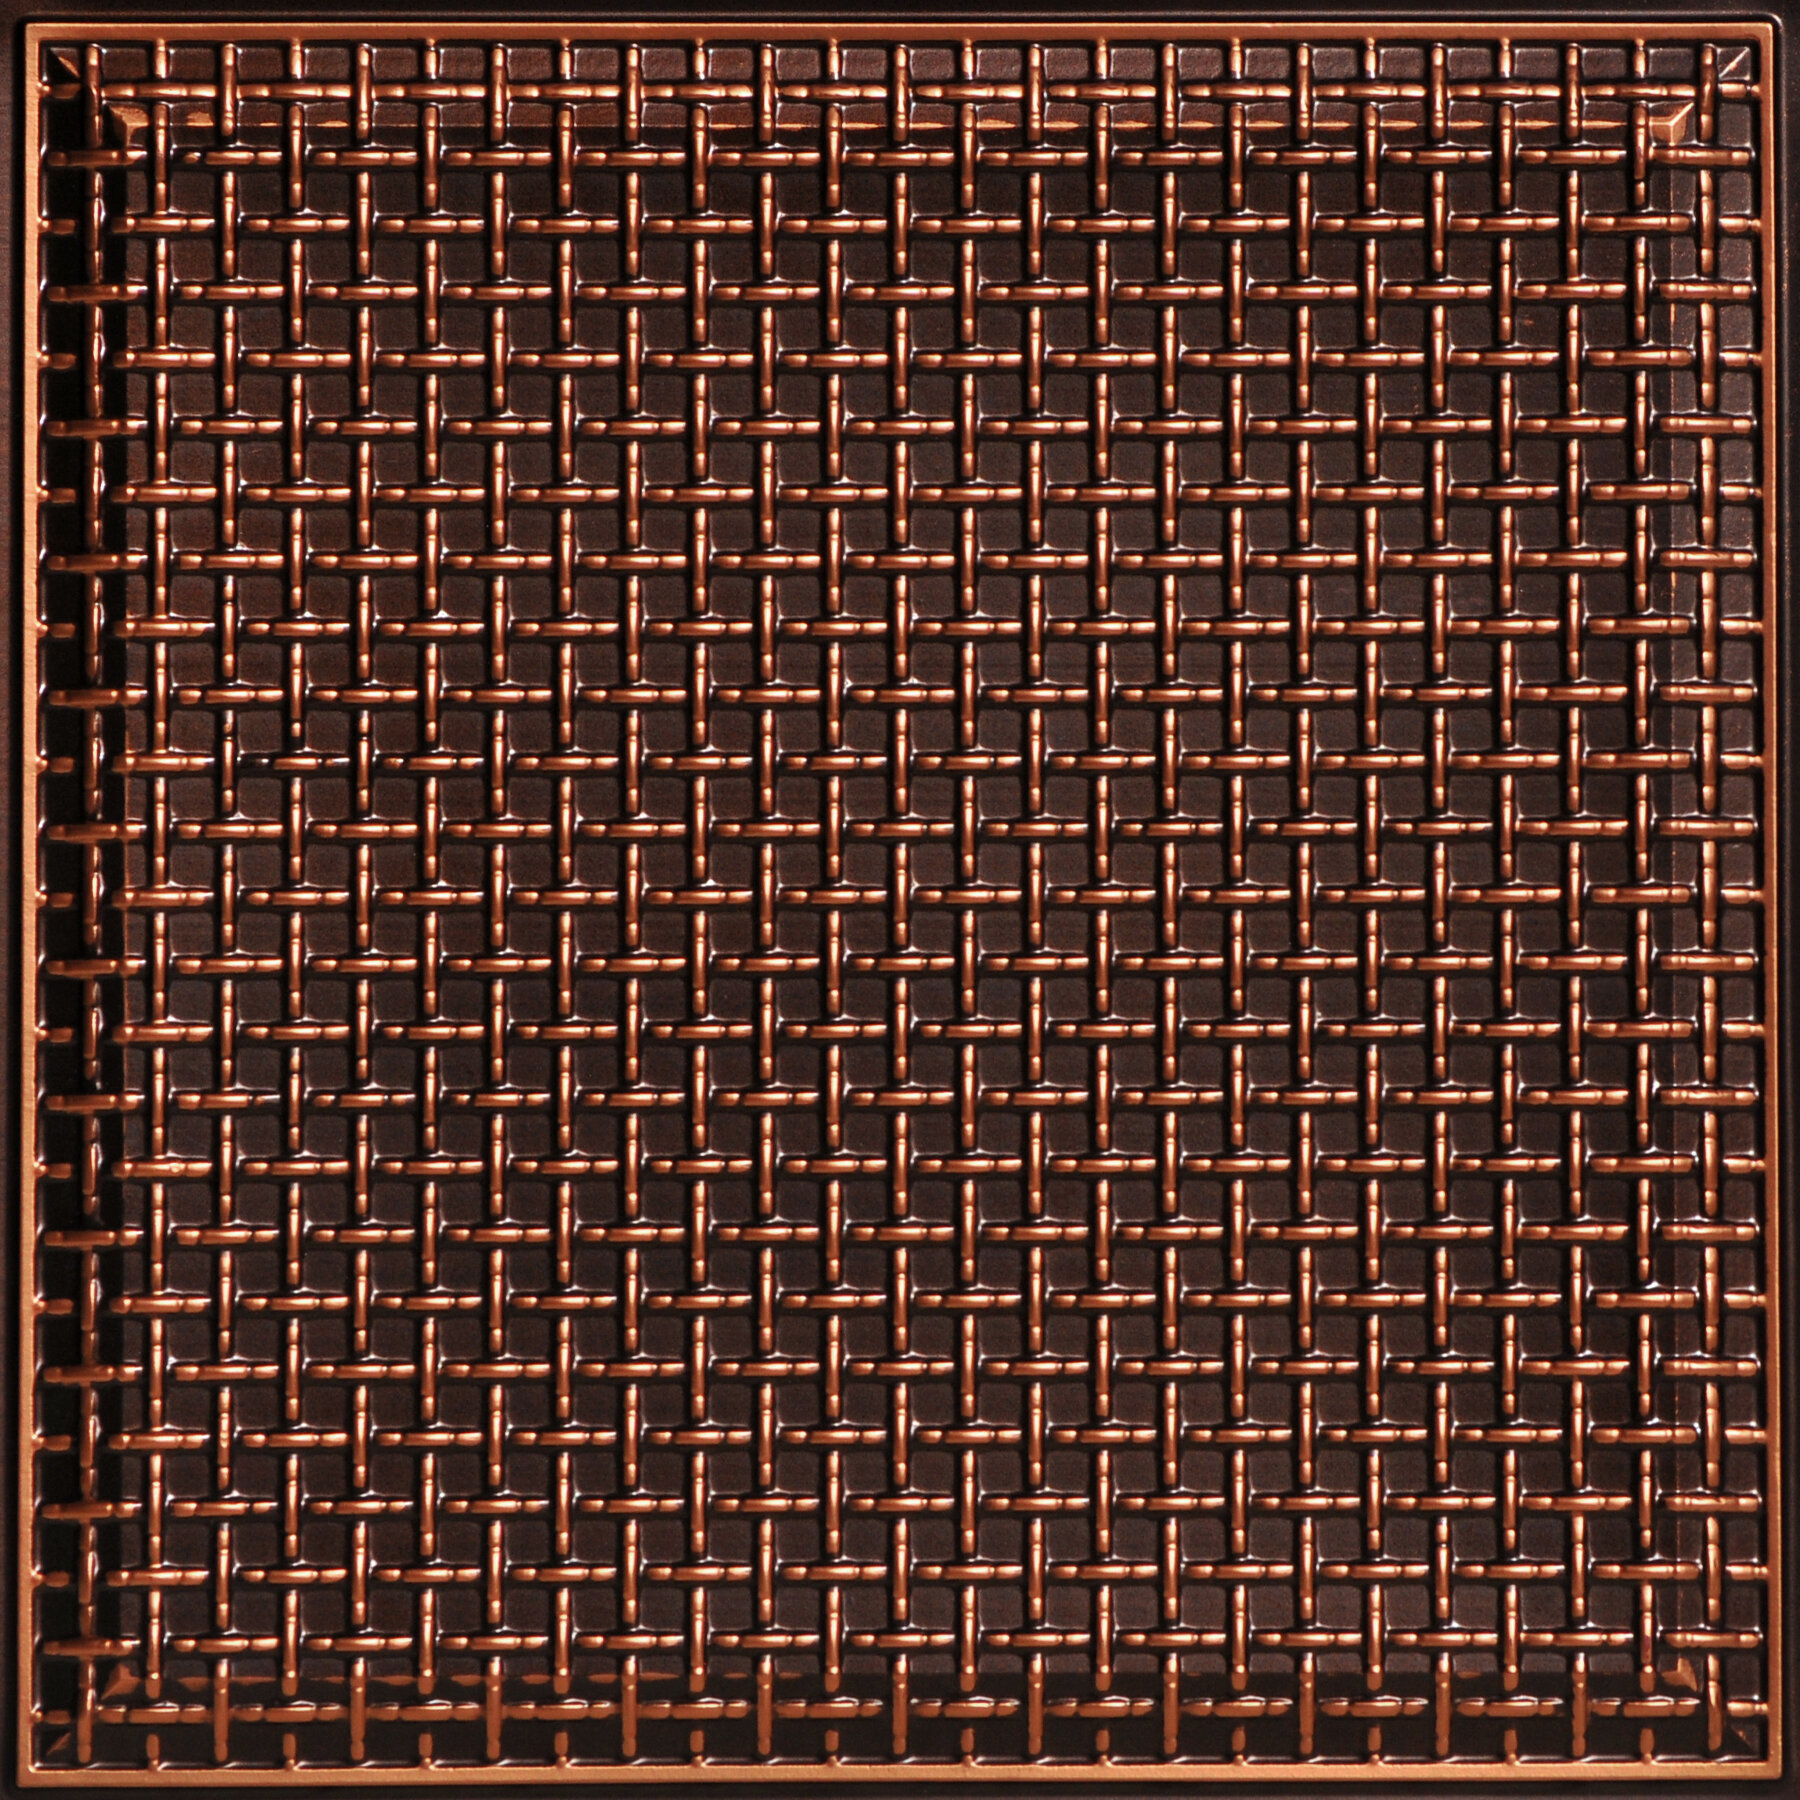 LOT OF 12 # 210 Antique Copper PVC Ceiling Tiles Glue Up/Grid 2' x 2' 